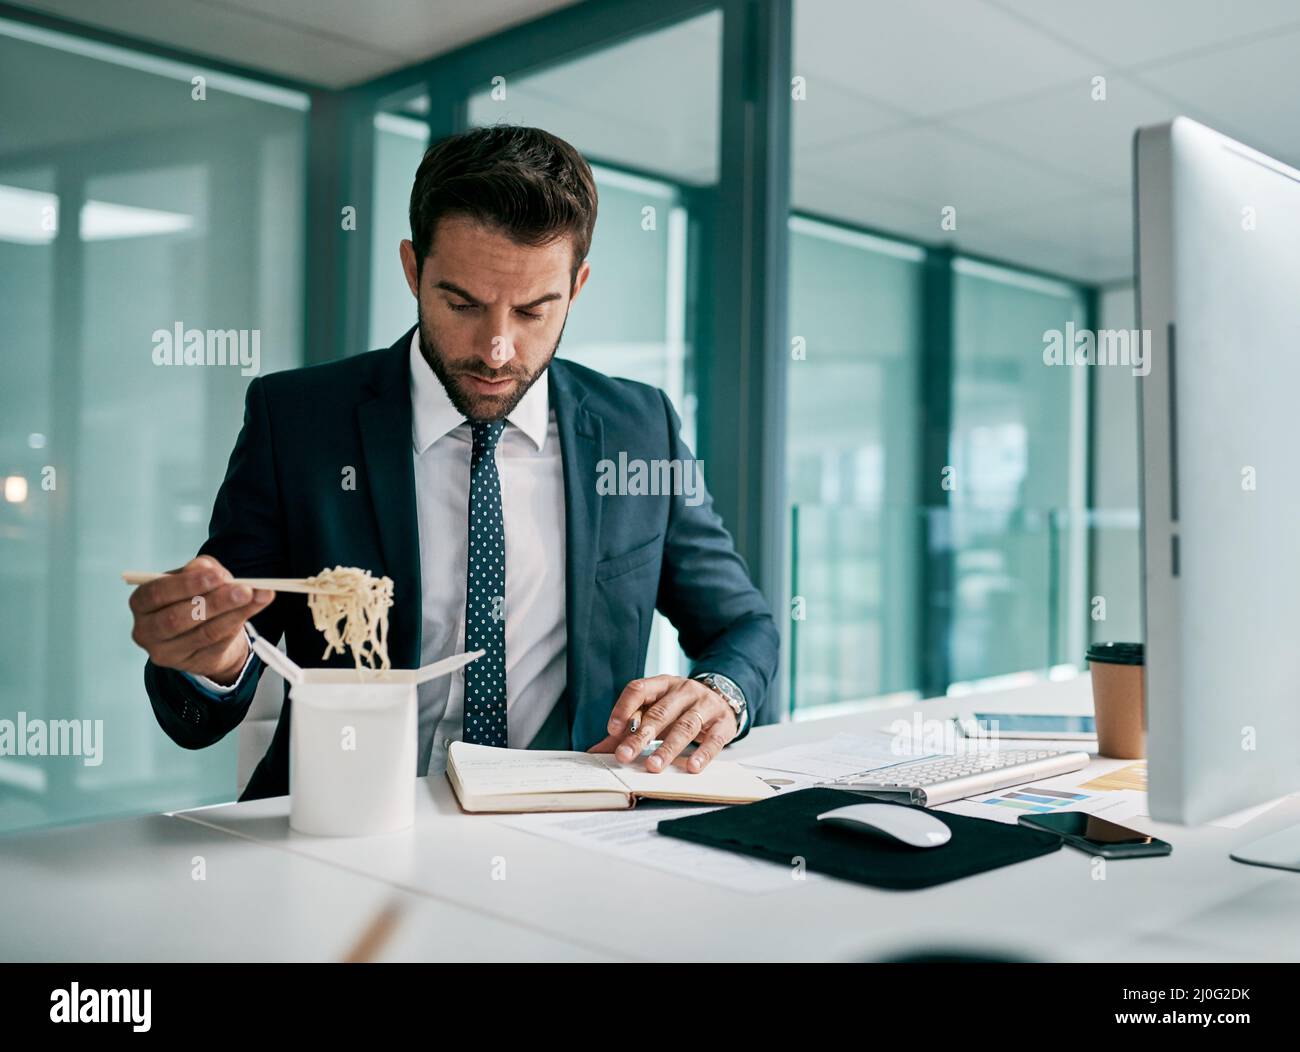 Kann sich nicht auf eine Sache auf einmal konzentrieren. Aufnahme eines fokussierten jungen Geschäftsmannes, der Nudeln aß, während er in einem Notizbuch im Büro schrieb. Stockfoto